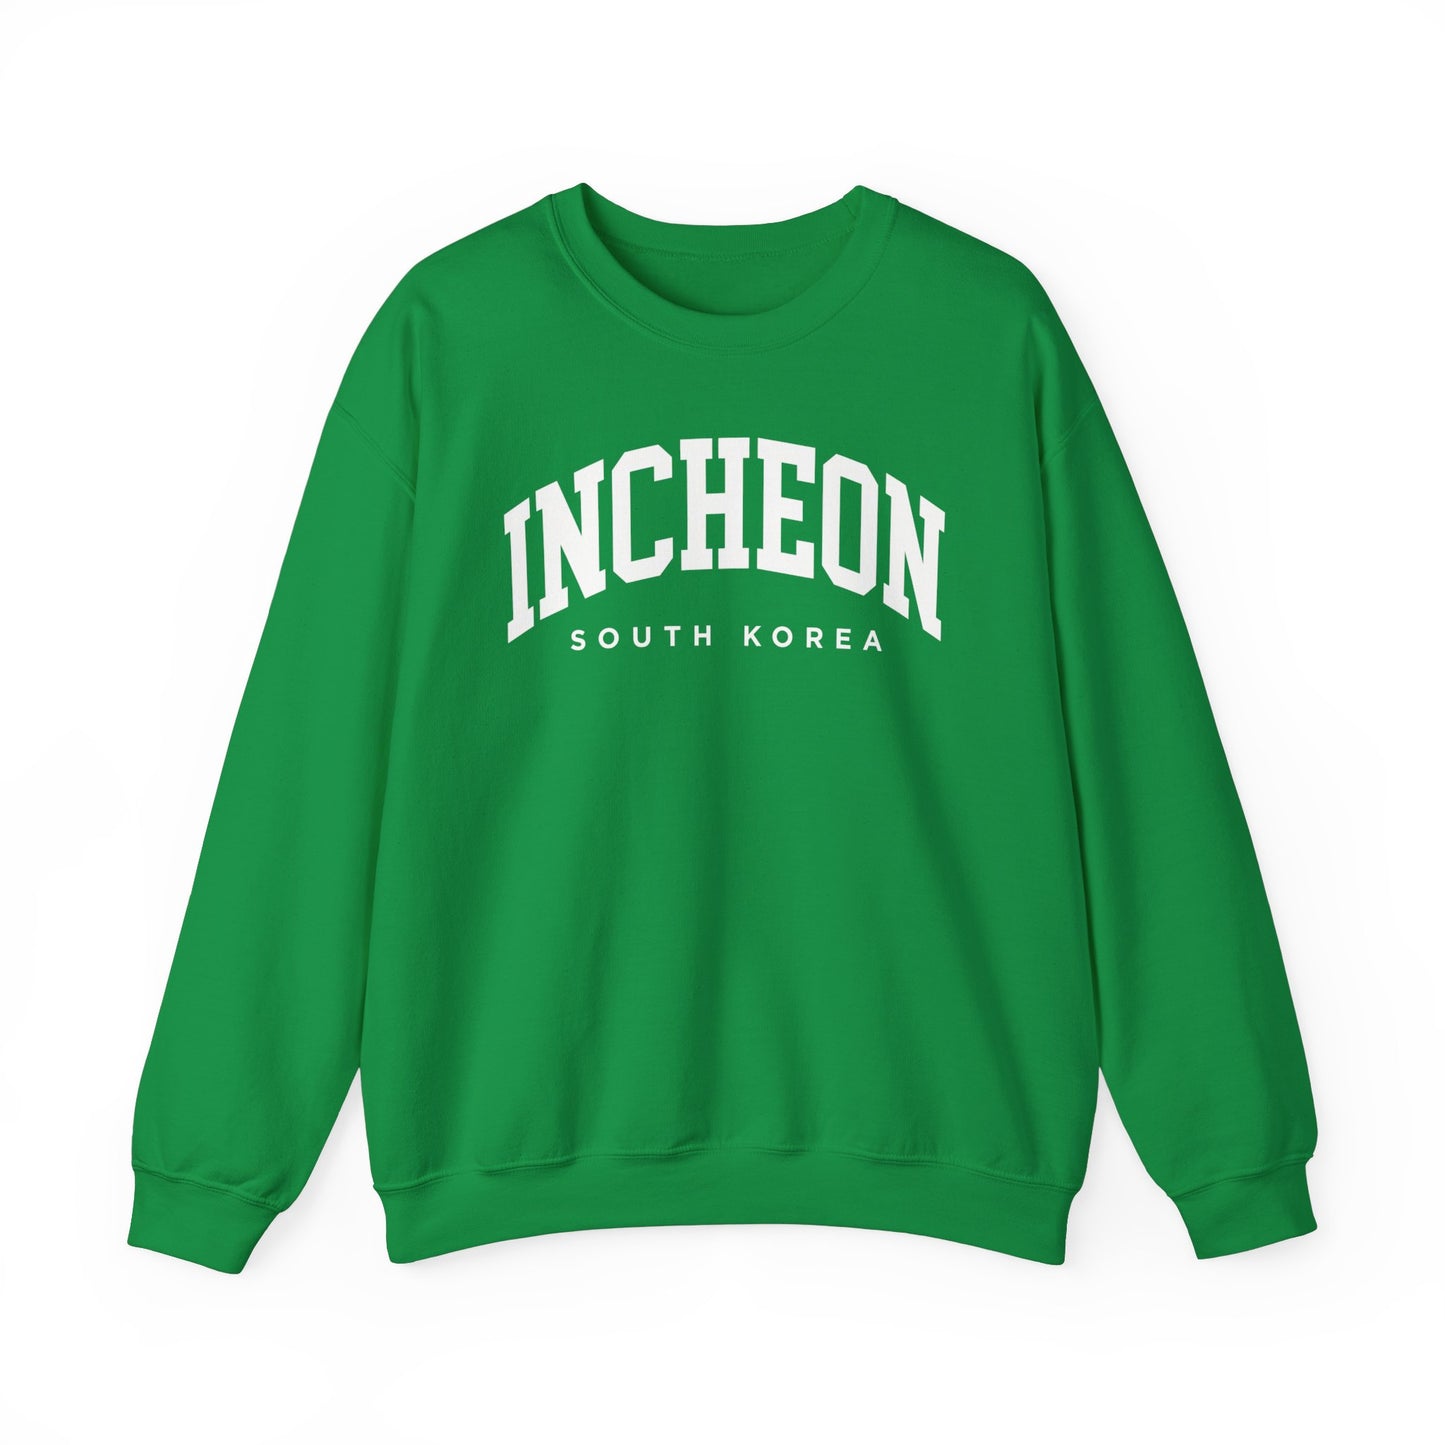 Incheon South Korea Sweatshirt